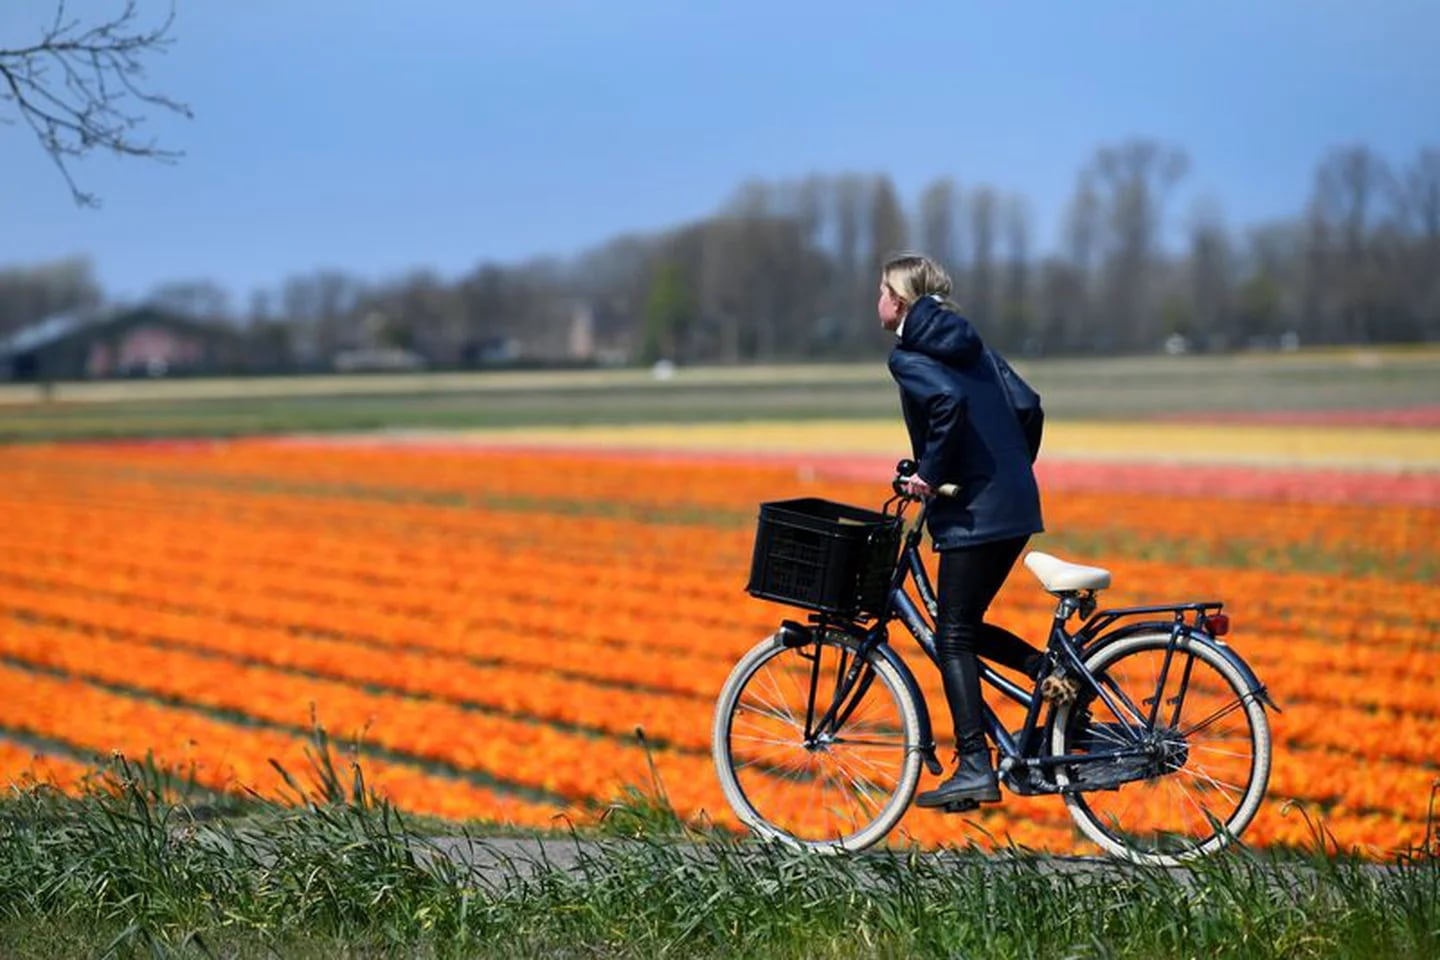 Celebra el Día Mundial de la Bicicleta con estas bicis eléctricas baratas, Lifestyle